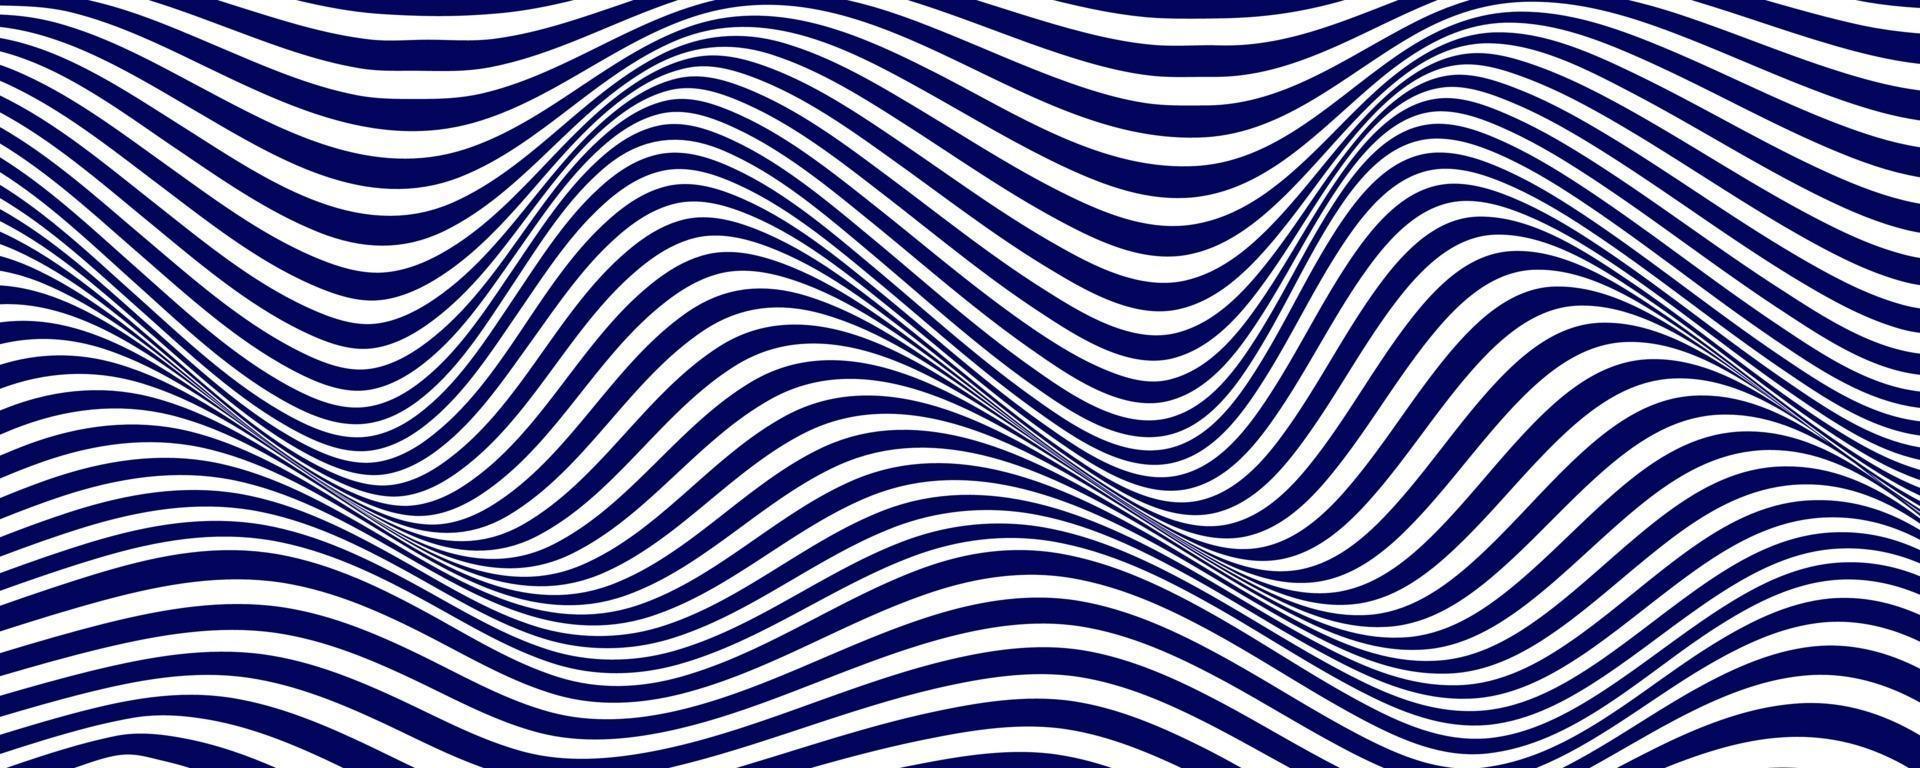 Fondo de ilusión óptica de rayas de tinta distorsionada vector